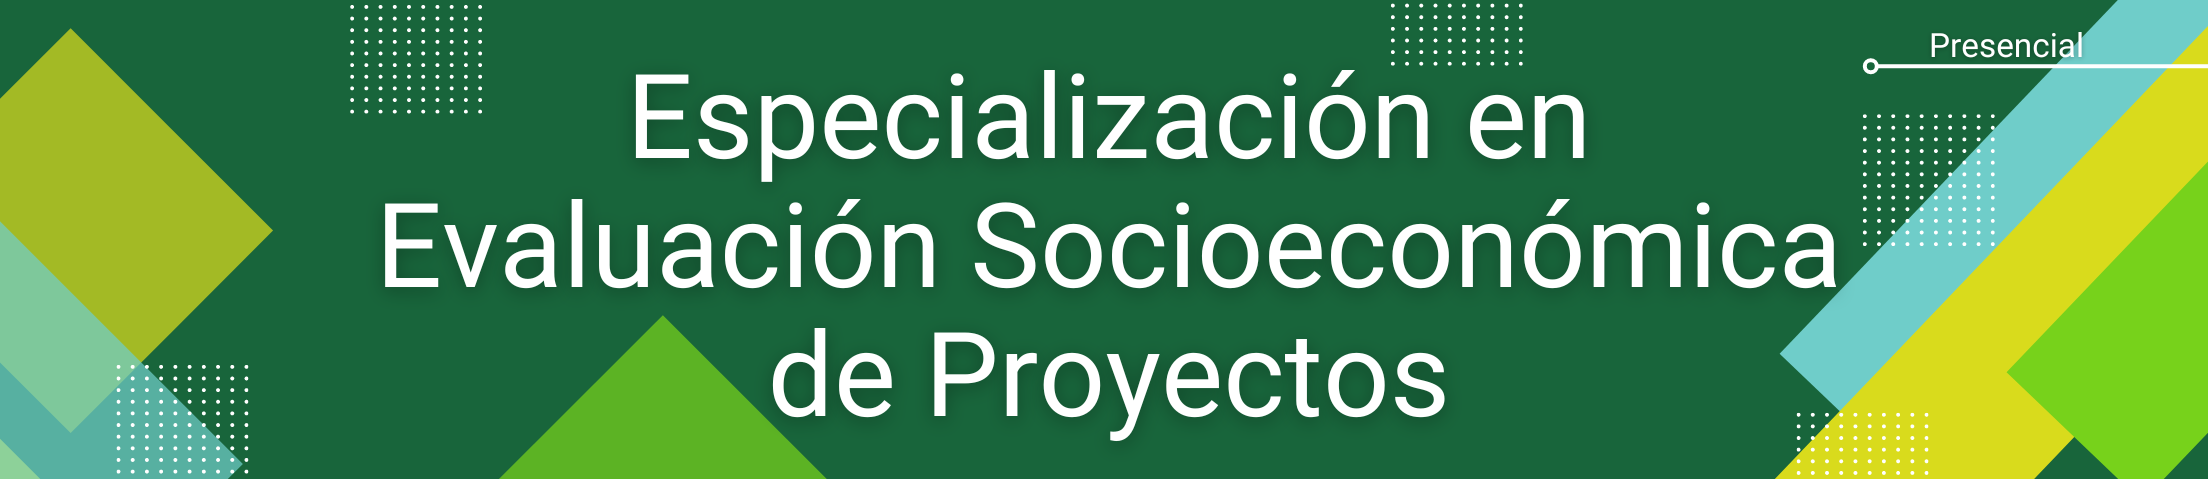 Banner inicial del programa. Especialización en Evaluación Socioeconómica de Proyectos.